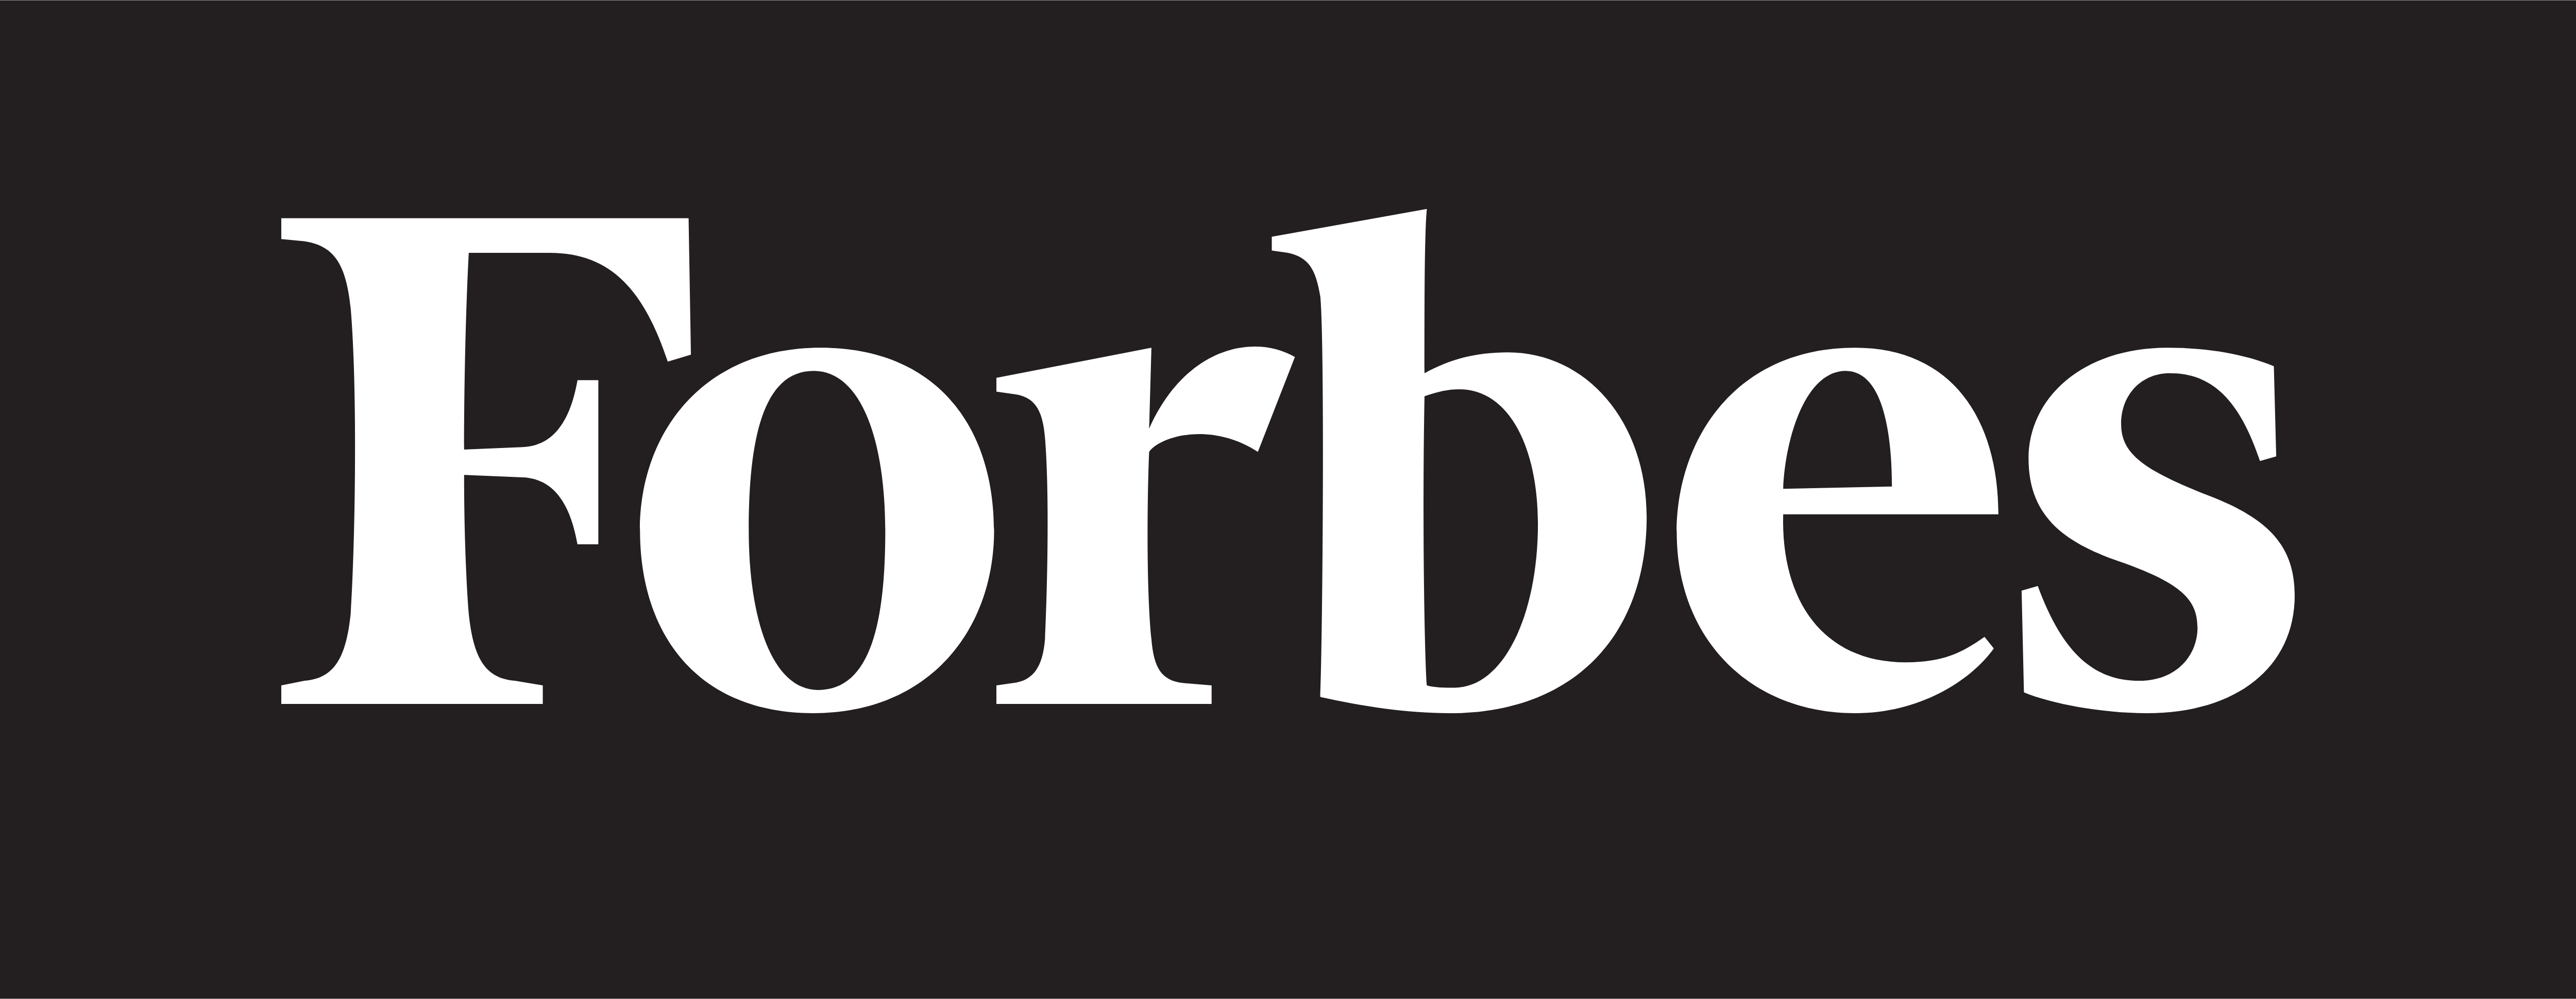 Logo logo-Forbes.png